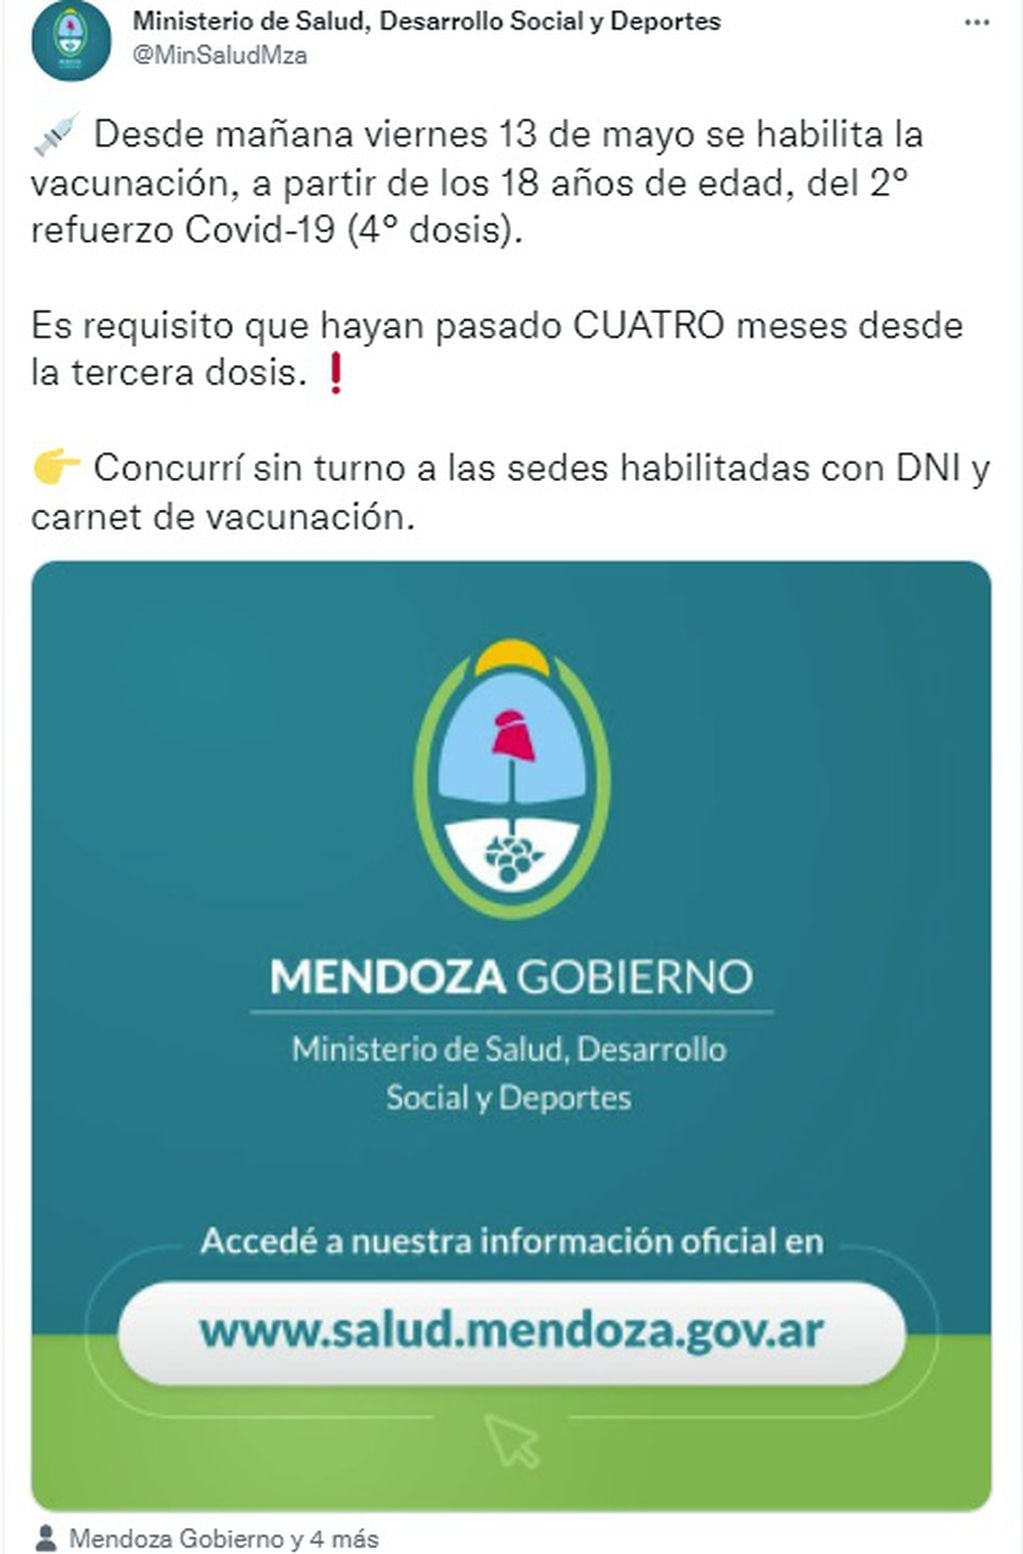 Vacunación: habilitan en Mendoza la cuarta dosis contra el Covid-19 (Twitter)